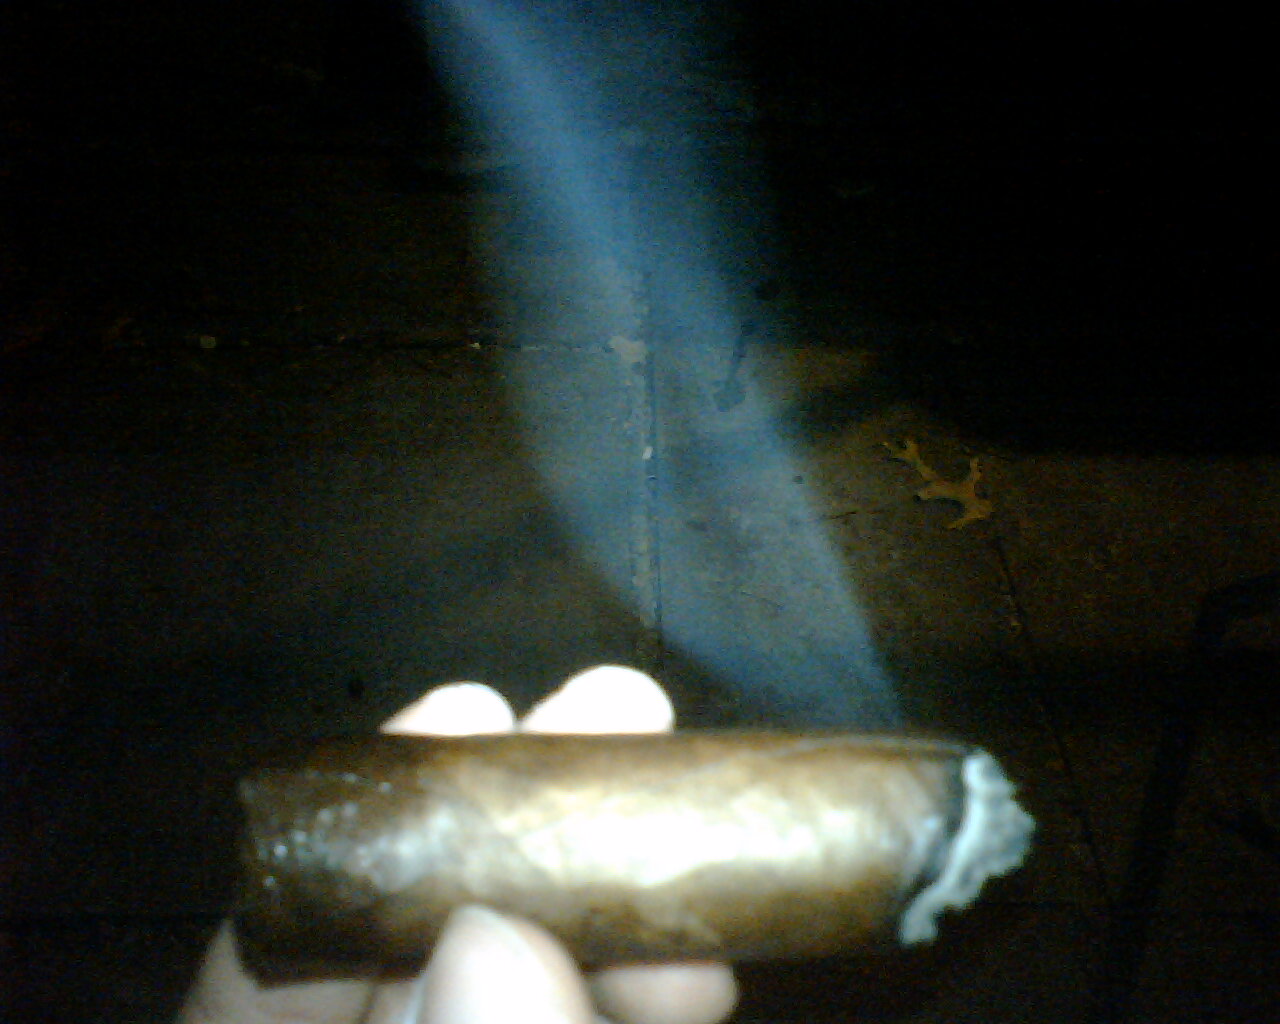 cigar 4.jpg